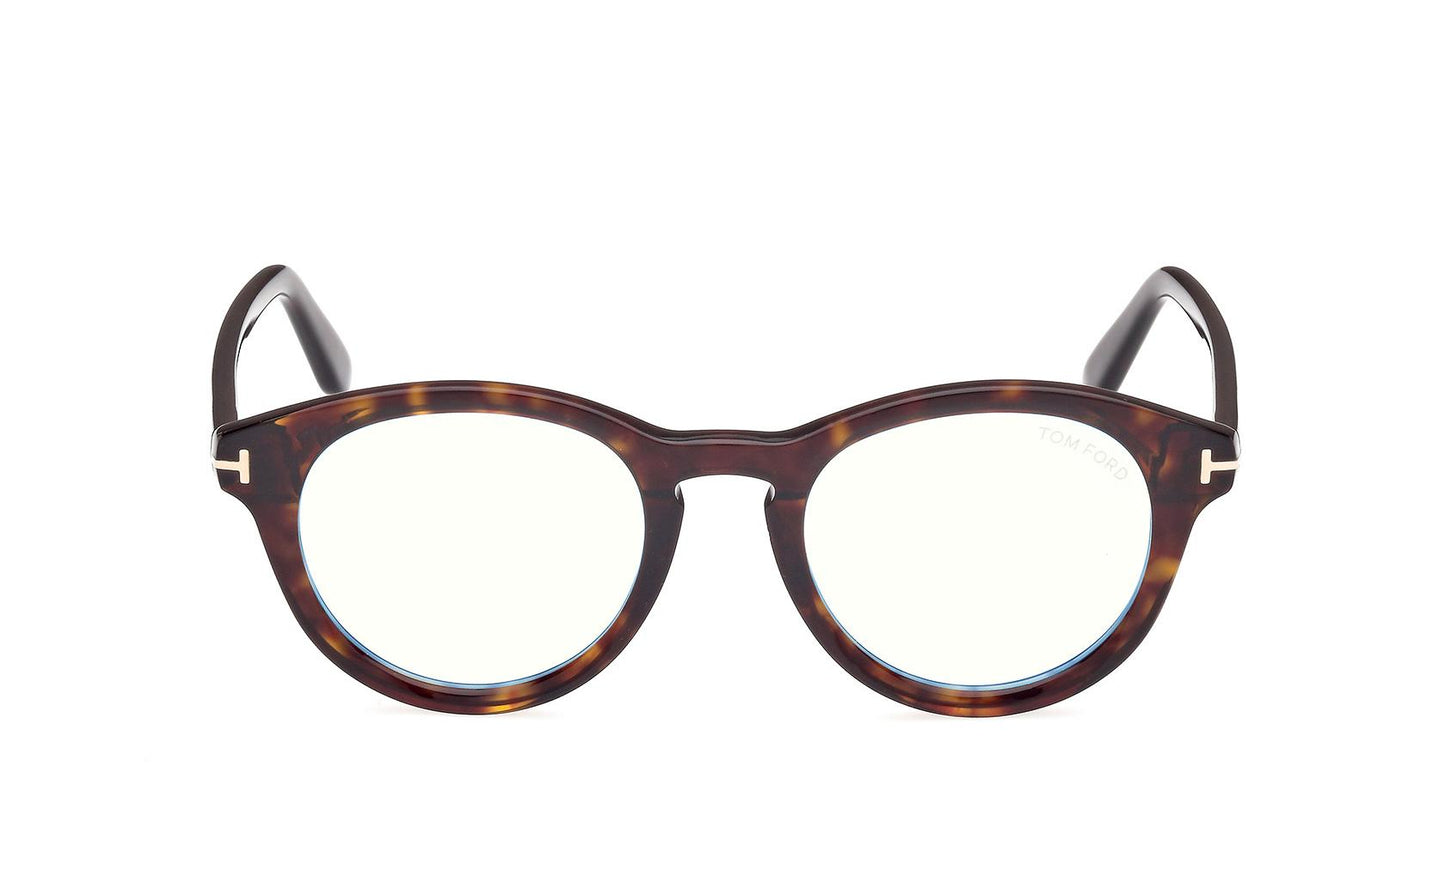 Tom Ford Eyeglasses FT5940/B 052